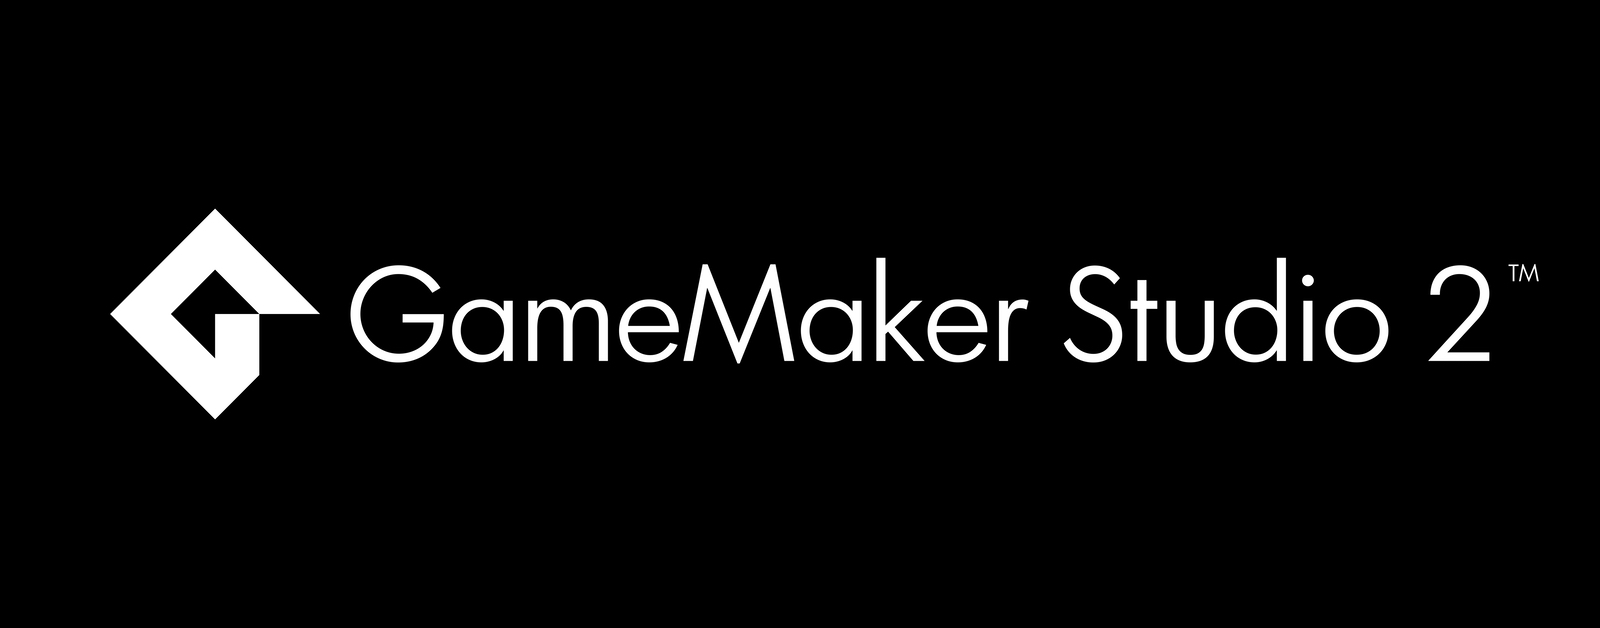 Gamemaker studio download free for mac